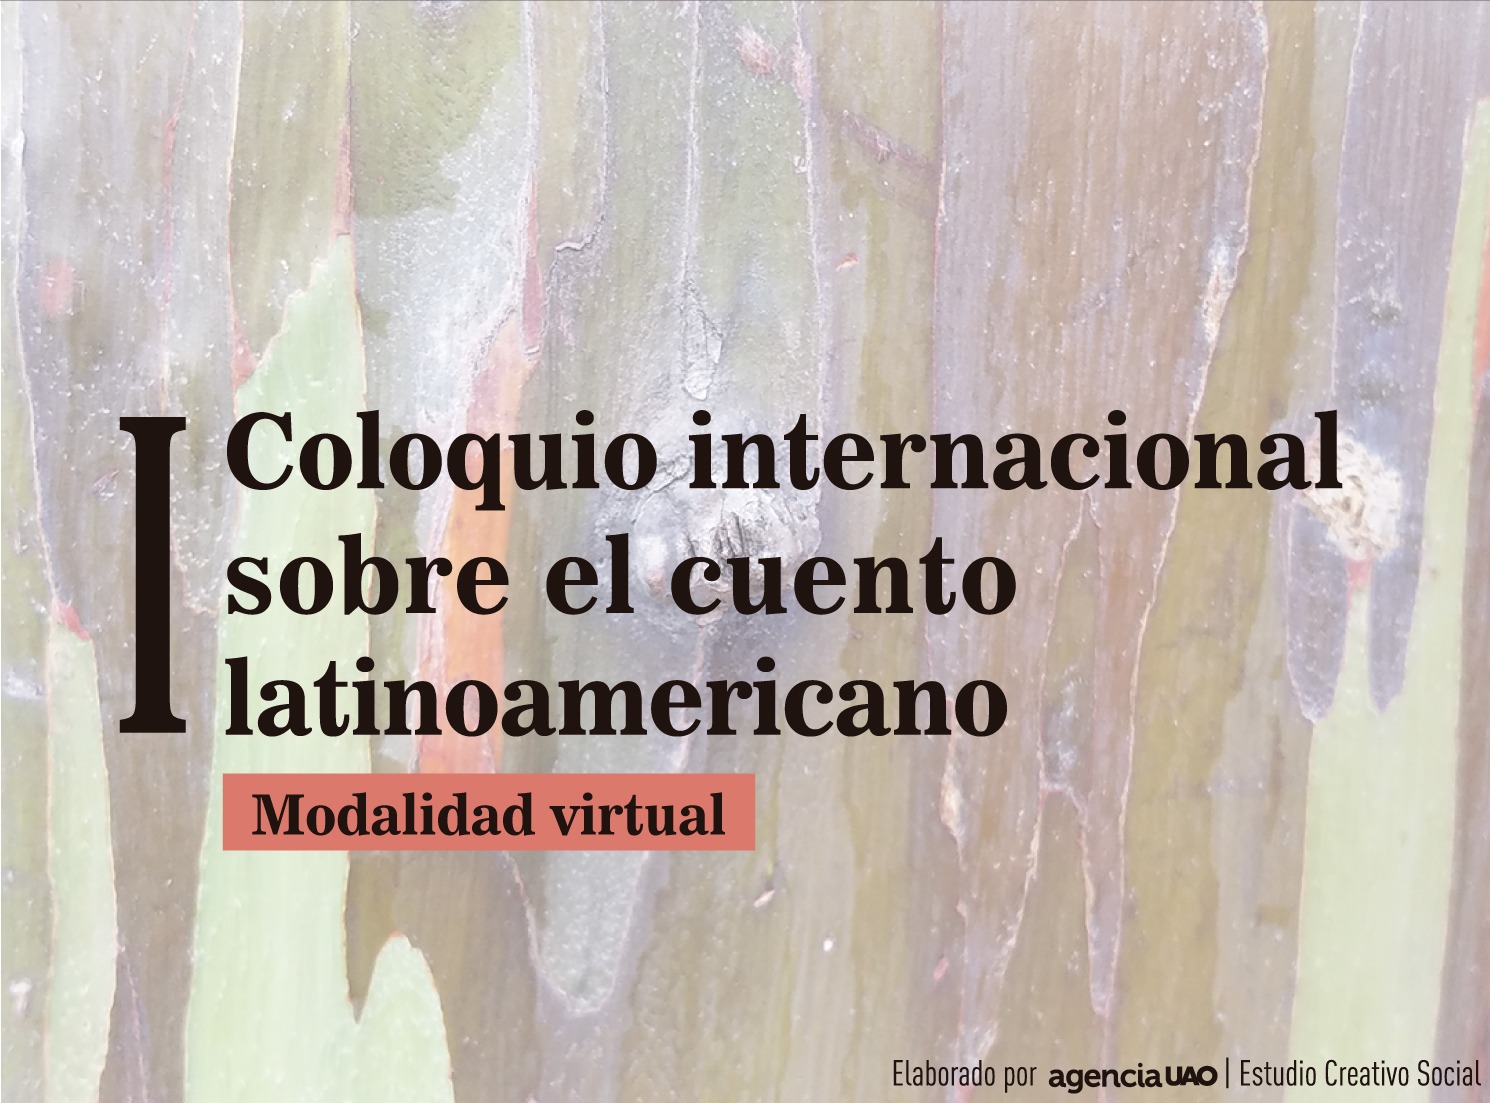 l Coloquio internacional sobre el cuento latinoamericano' - UAO Portal